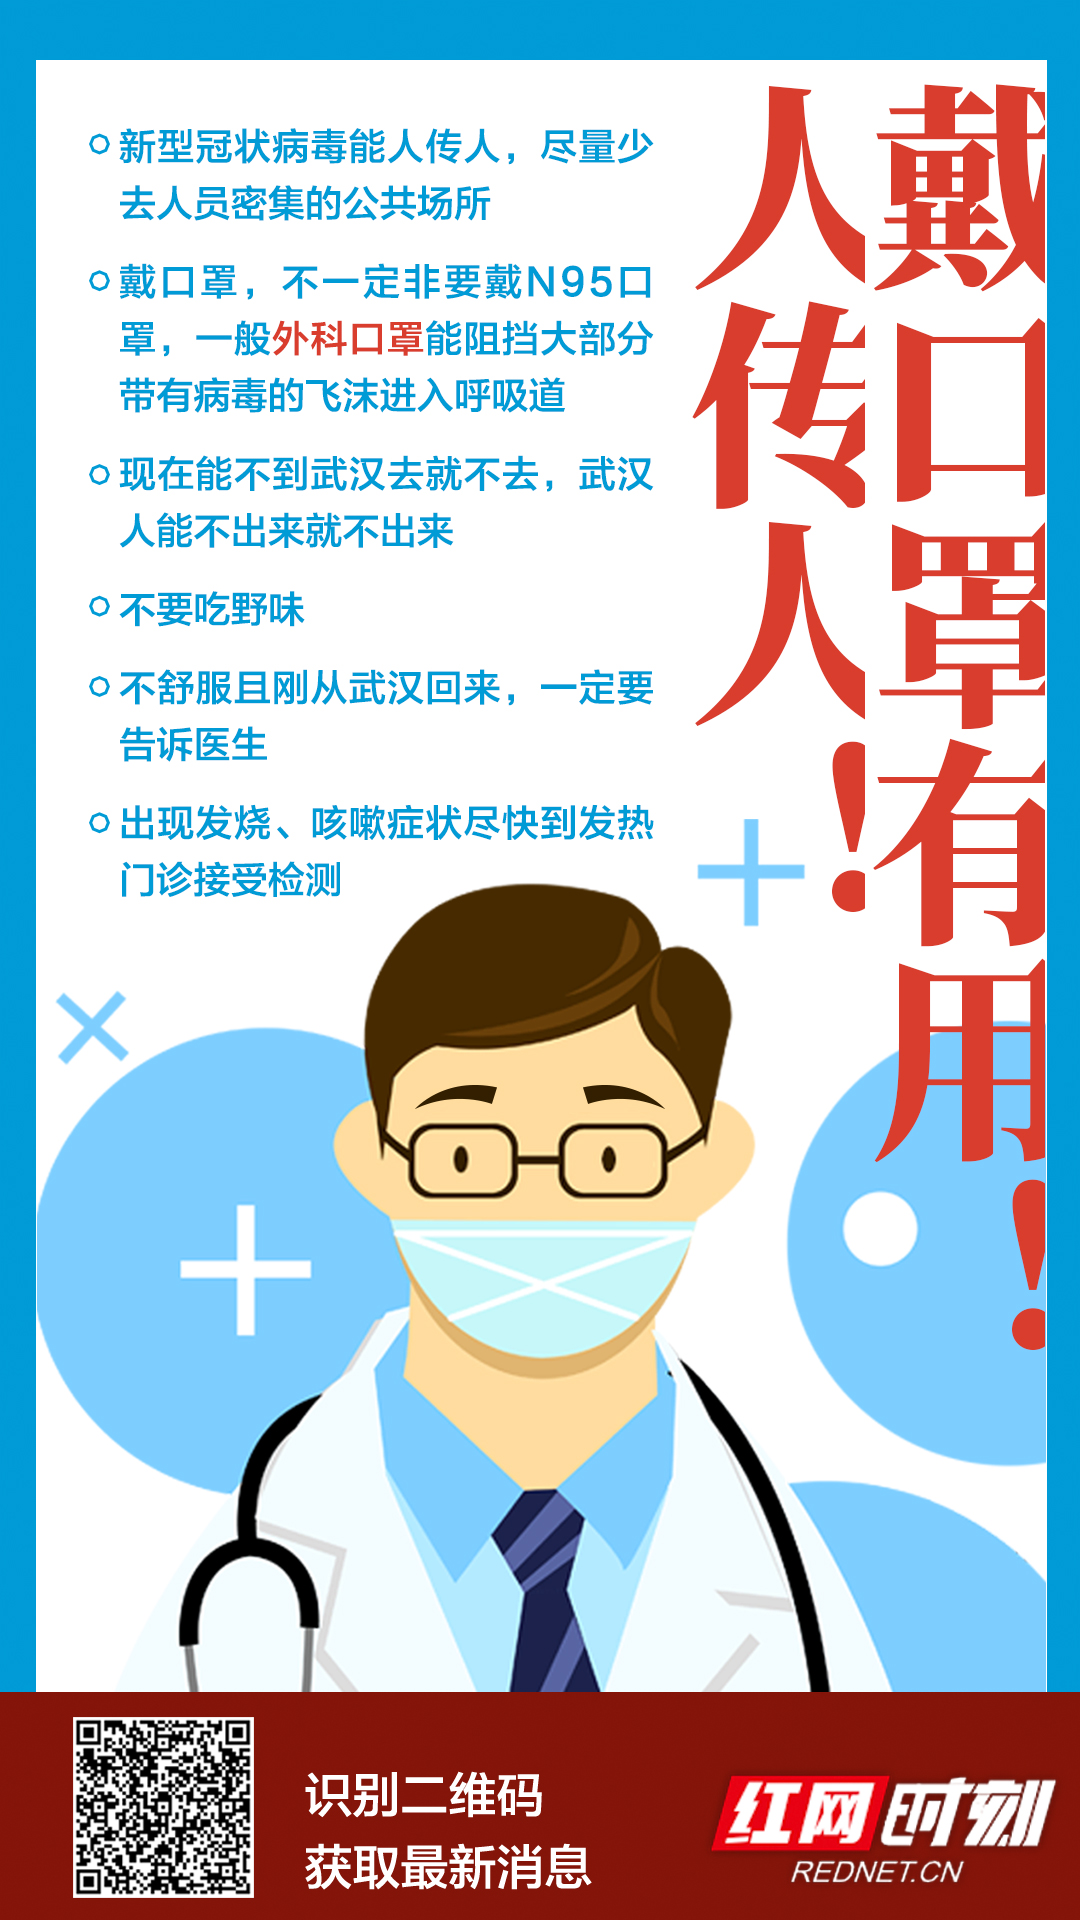 战疫微海报丨关注武汉新型冠状病毒(滚动更新)